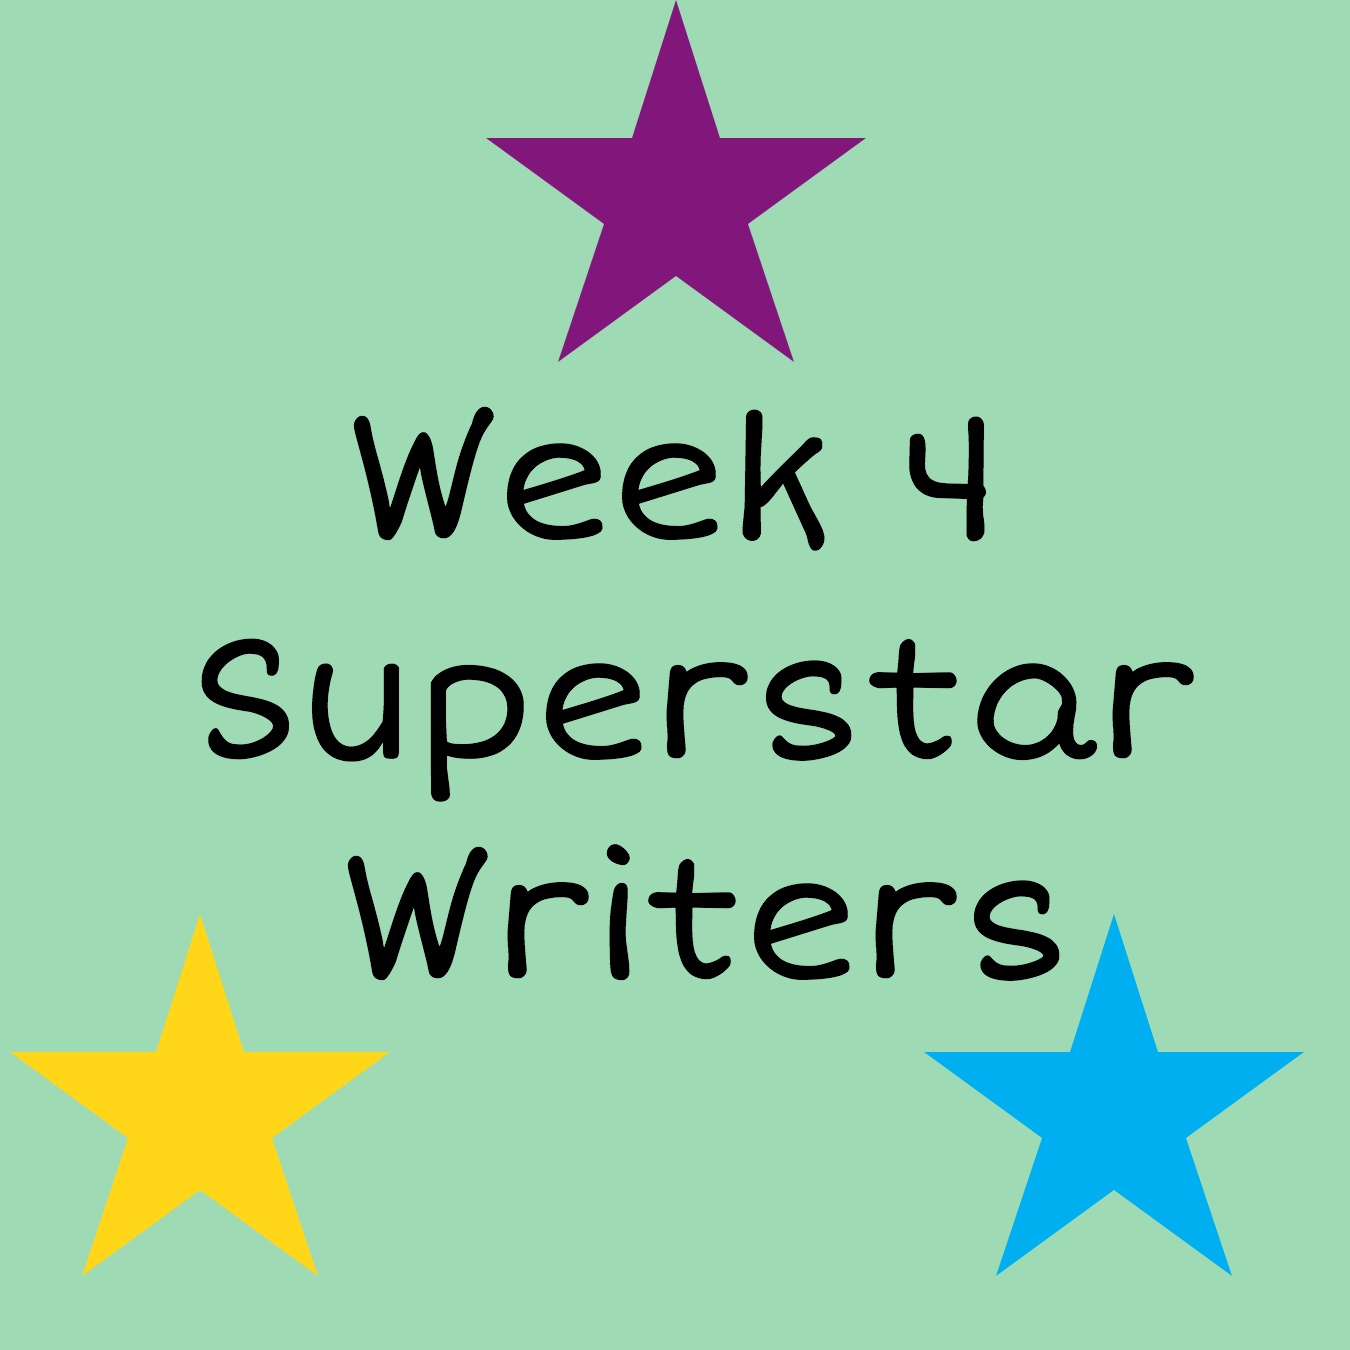 Week 4 Superstar Writers